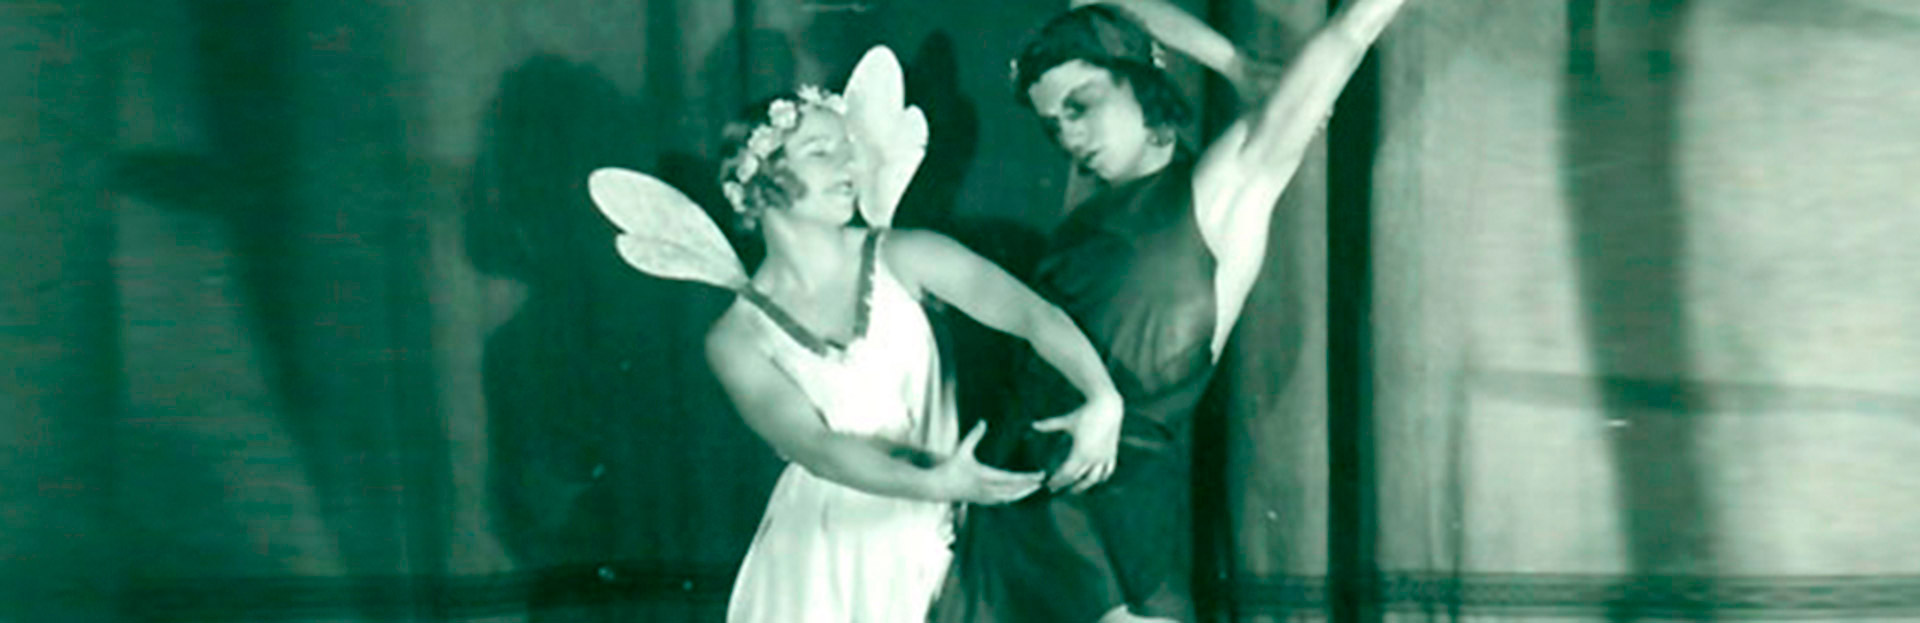 Conferencia | Serge Lifar y el discurso neoclasicista de la danza de entreguerras (1930-1939)